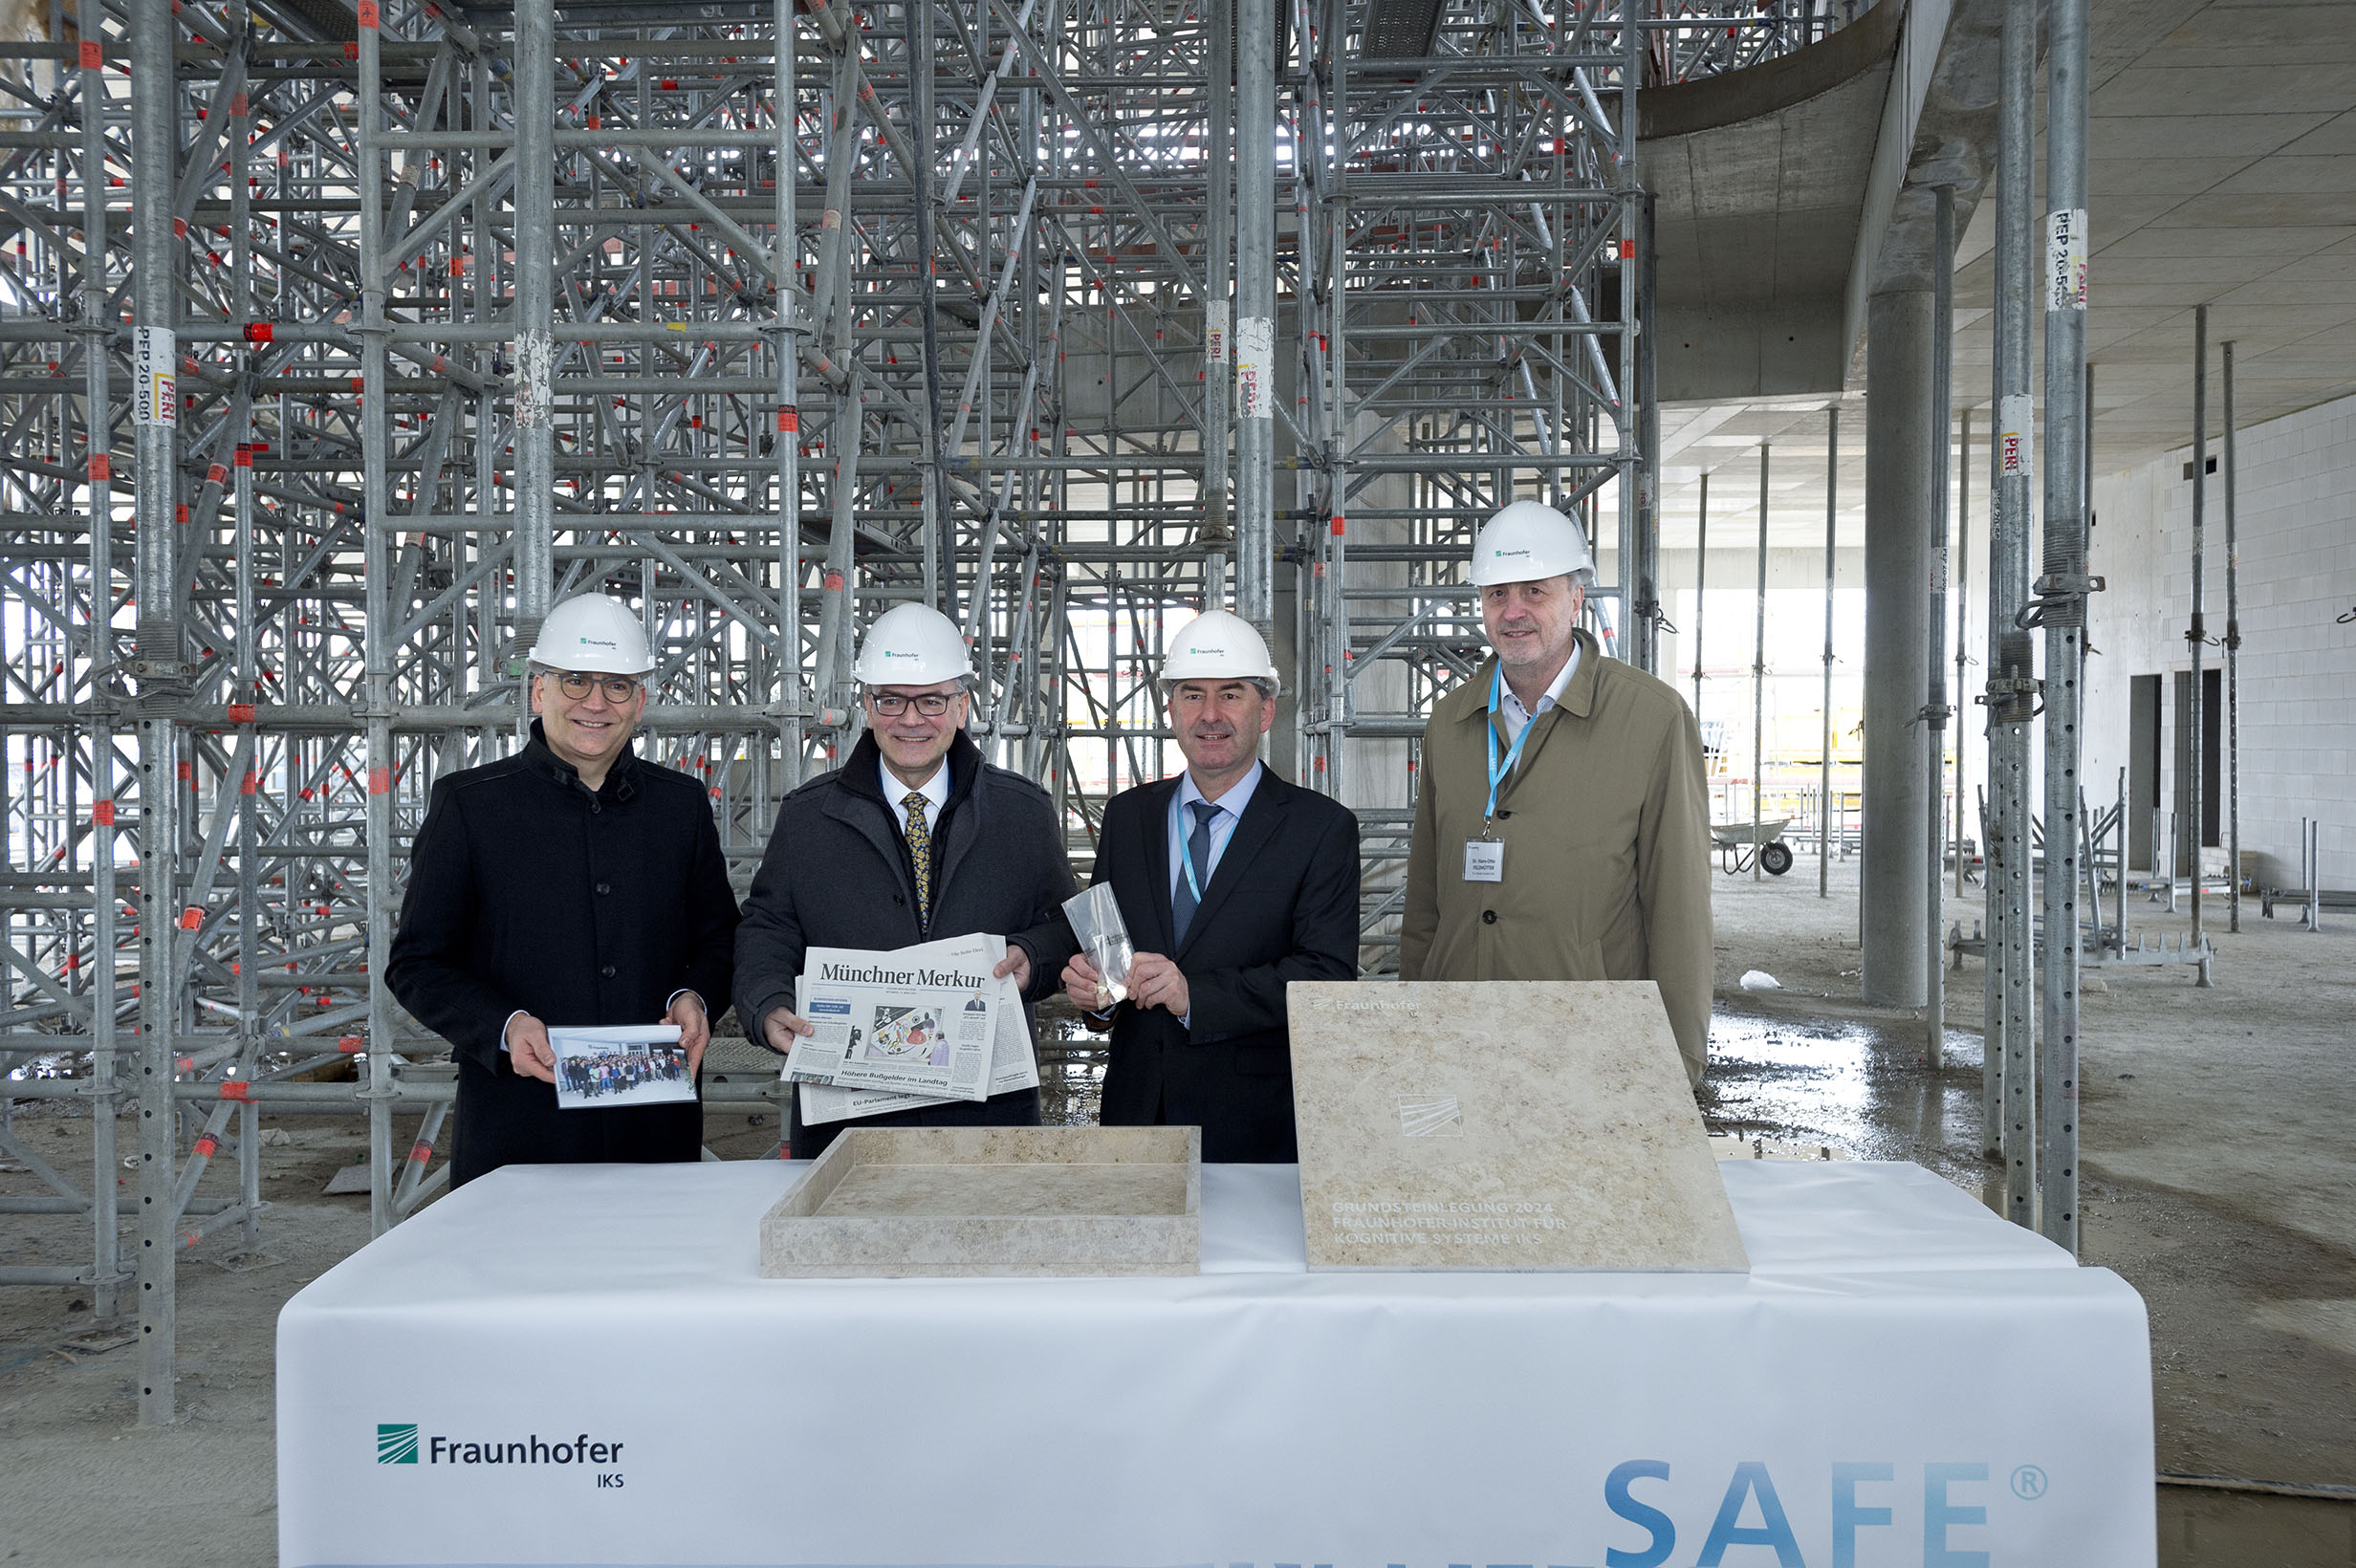 Gruppenfoto von Grundsteinlegung für Institutsgebäude des Fraunhofer IKS